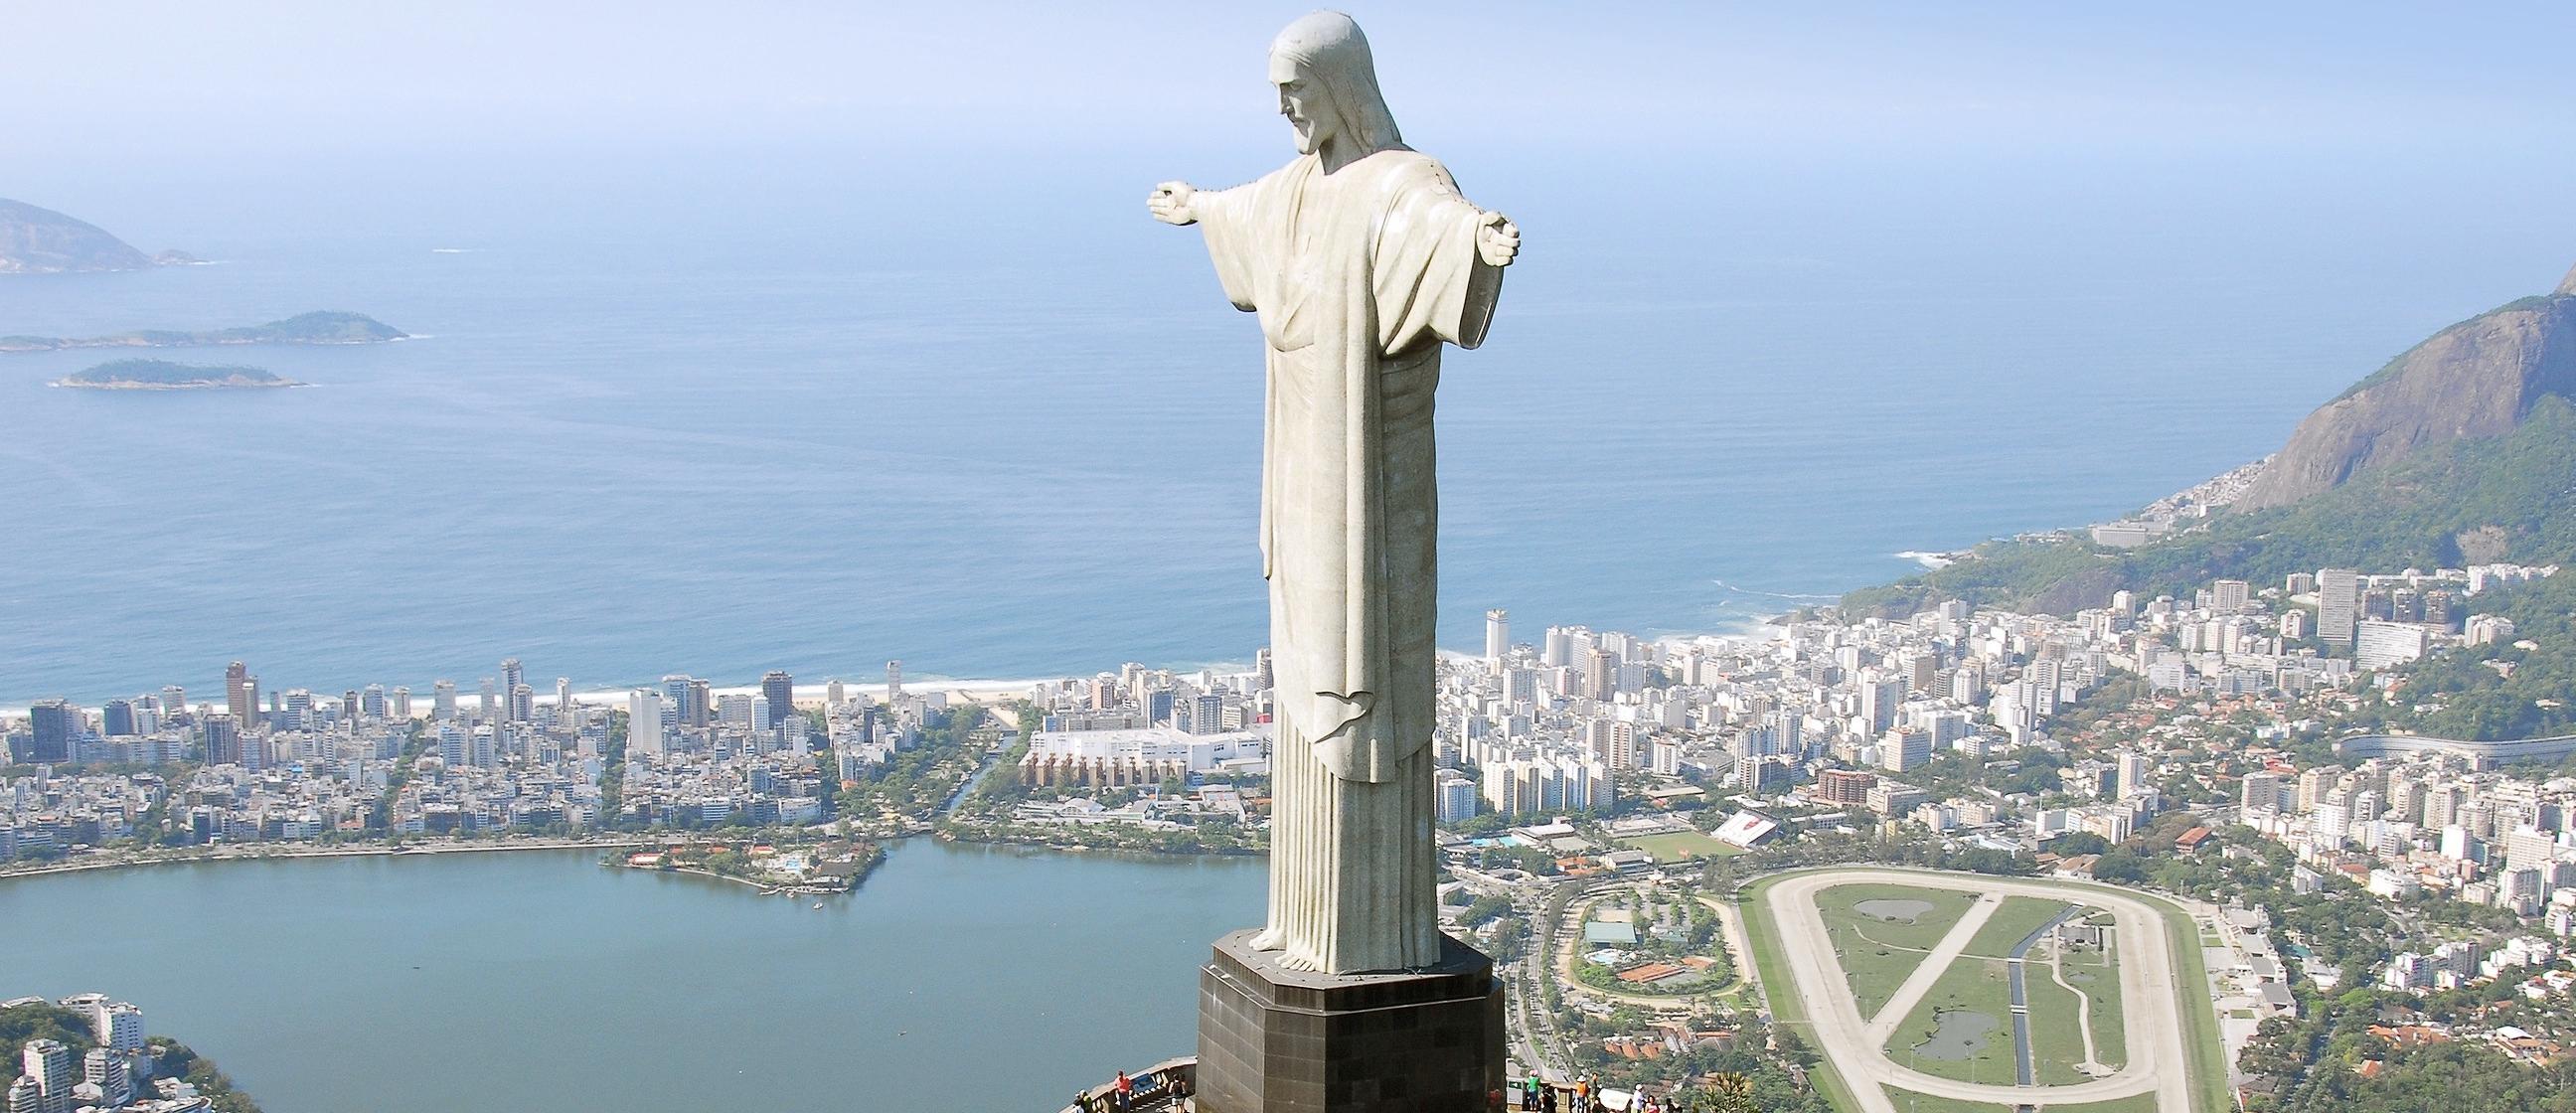 The Rio de Janeiro city, cover photo